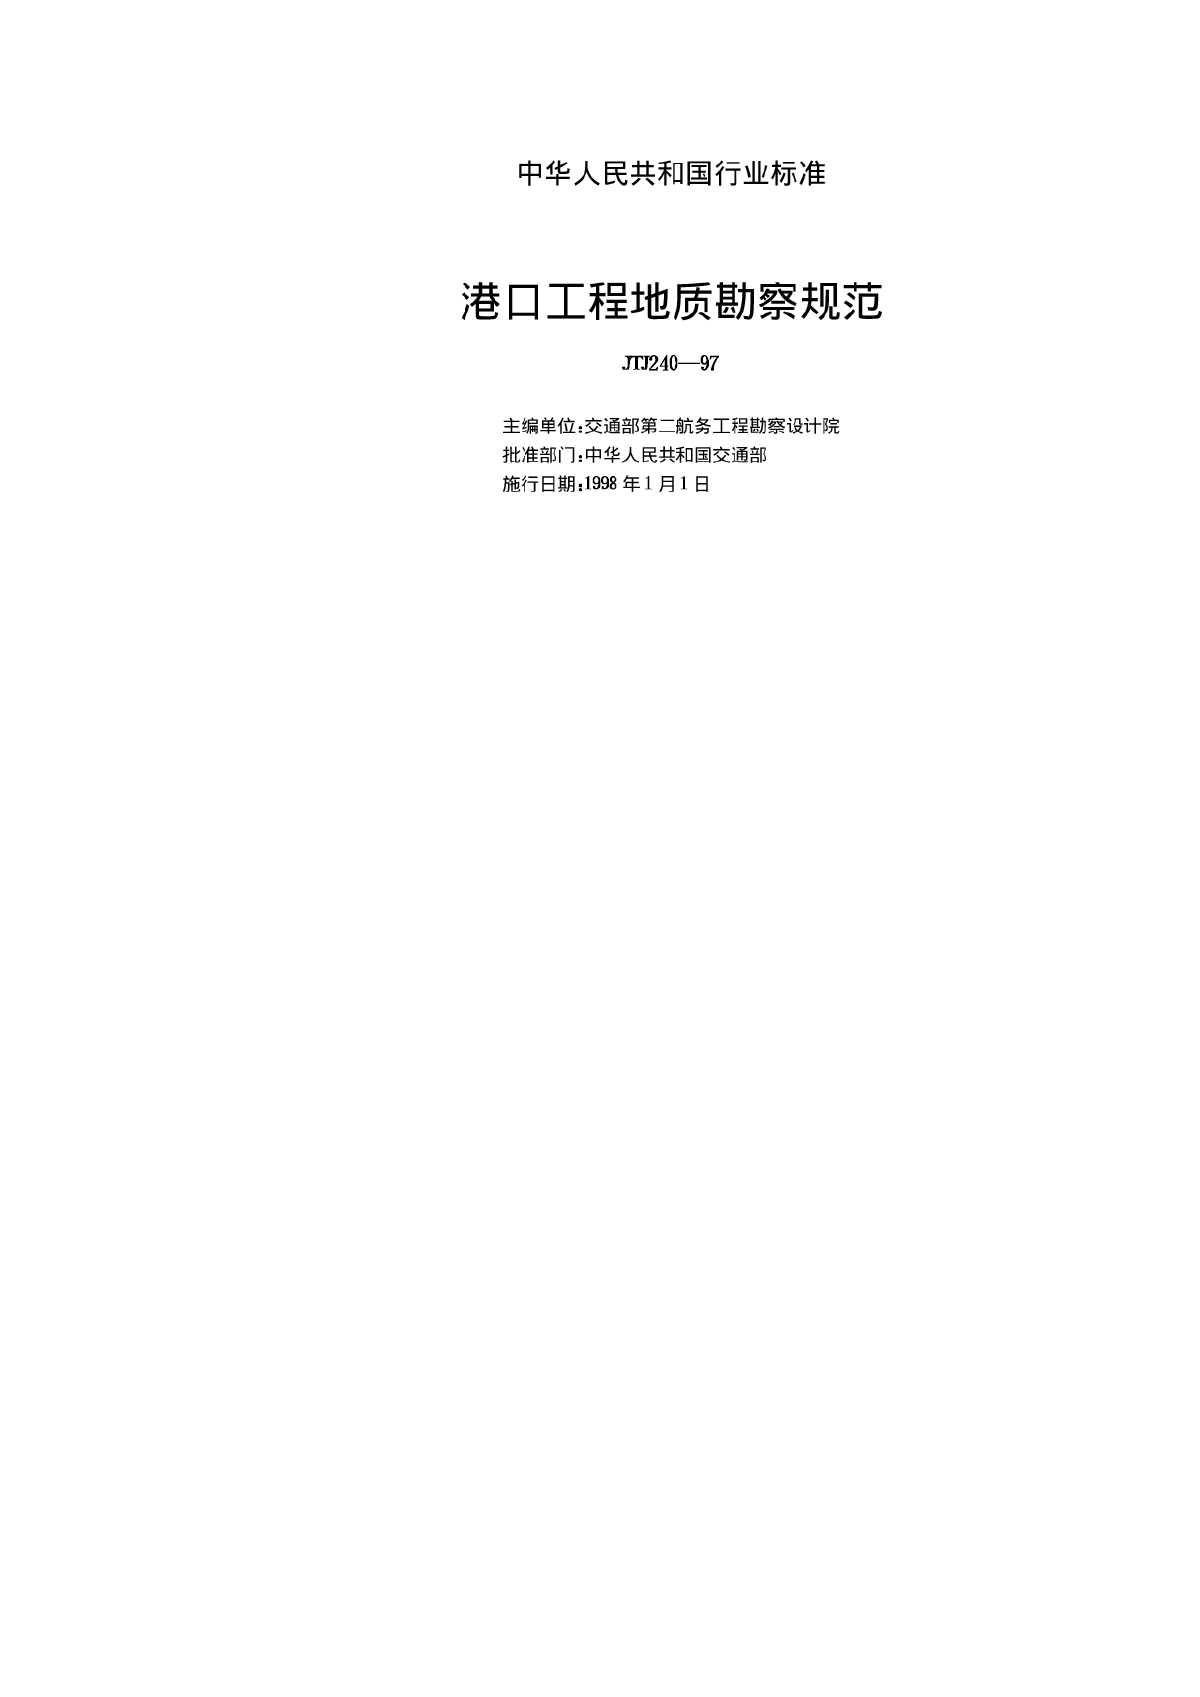 港口工程地质勘察规范JTJ240-97-图二